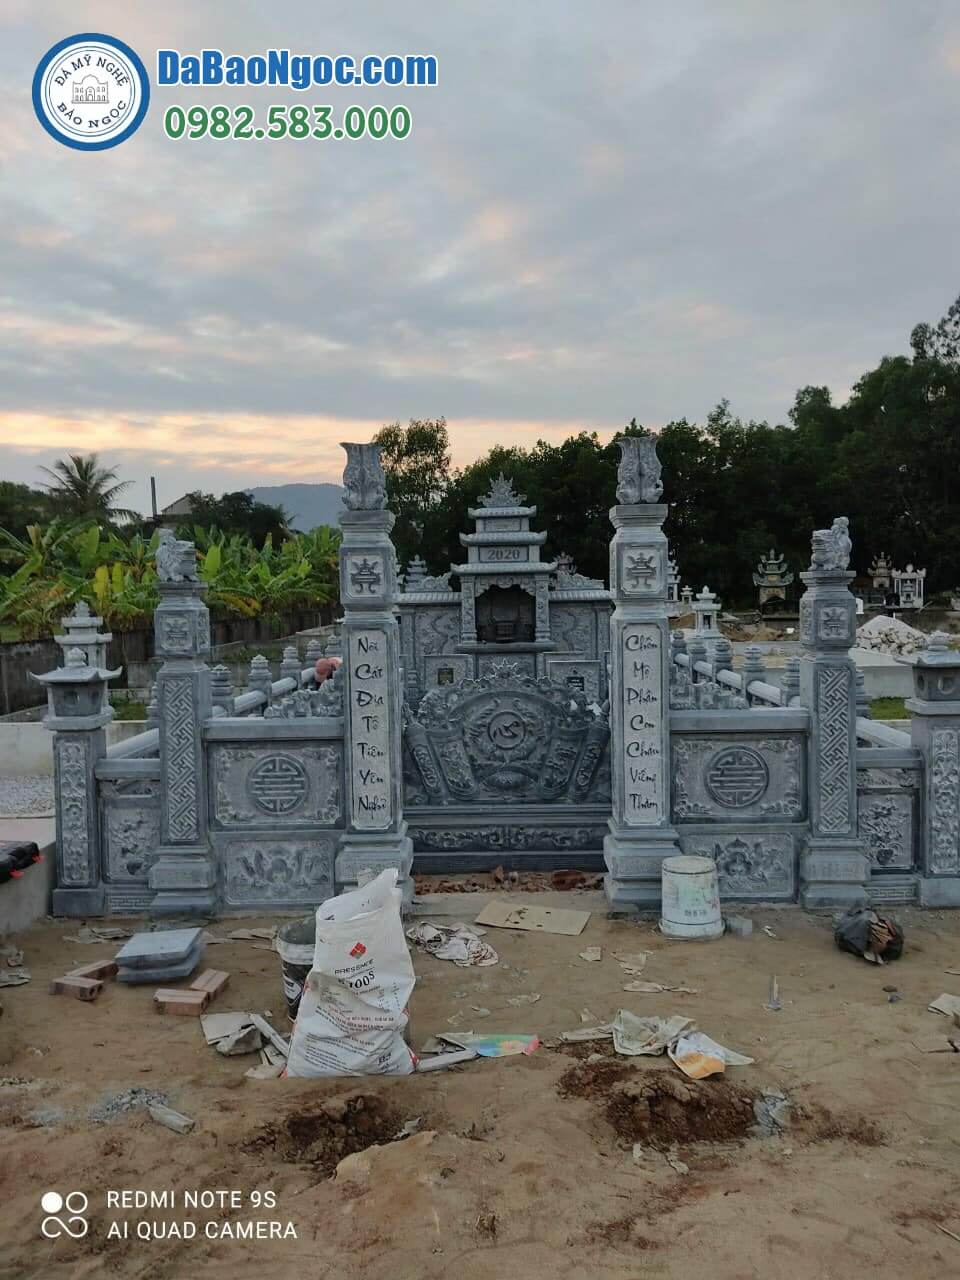 Địa chỉ cơ sở chế tác, xây Lăng mộ đá ở Hà Giang rẻ đẹp